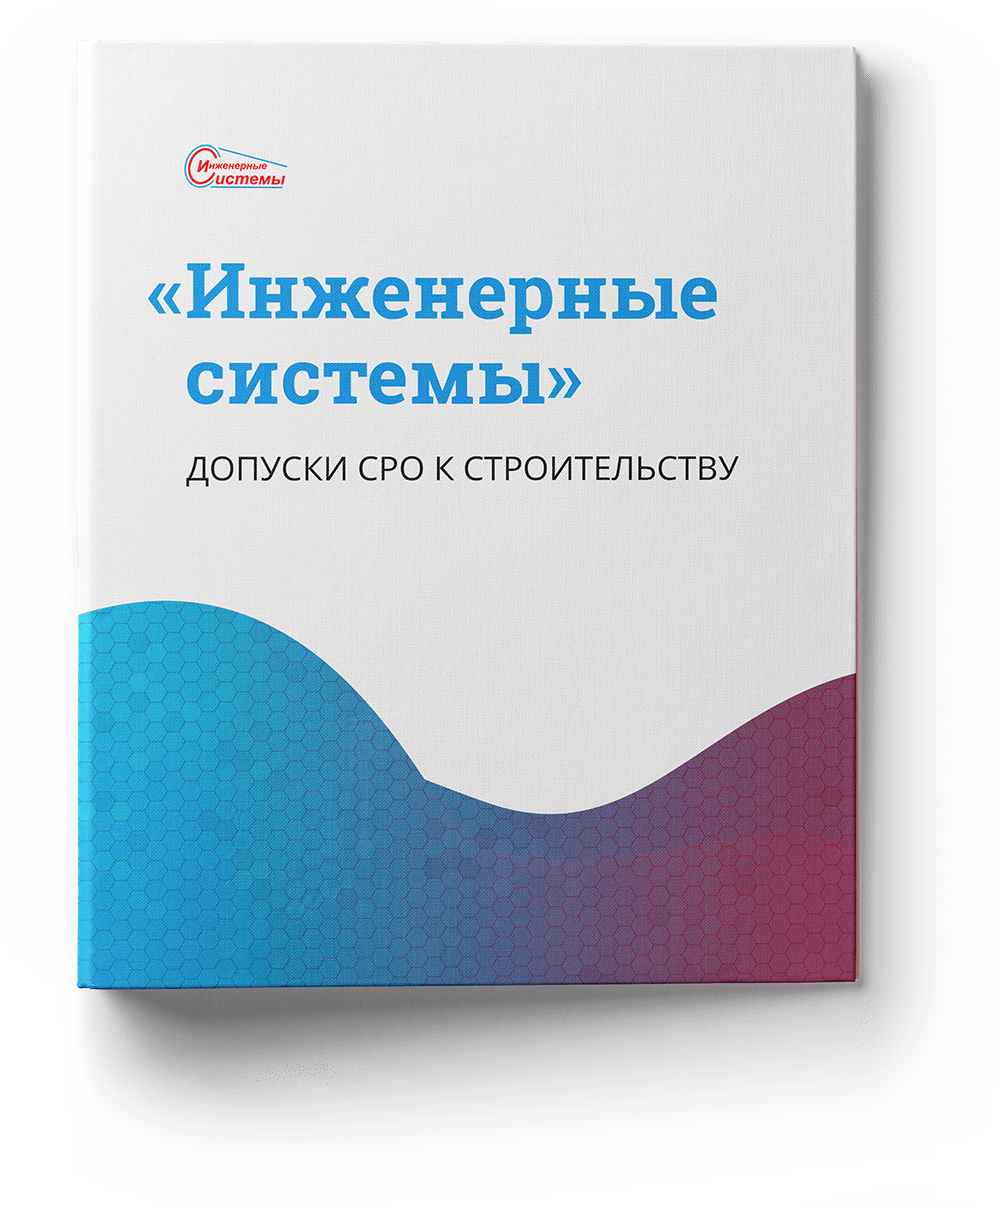 Допуски СРО к строительству ООО "Инженерные системы"